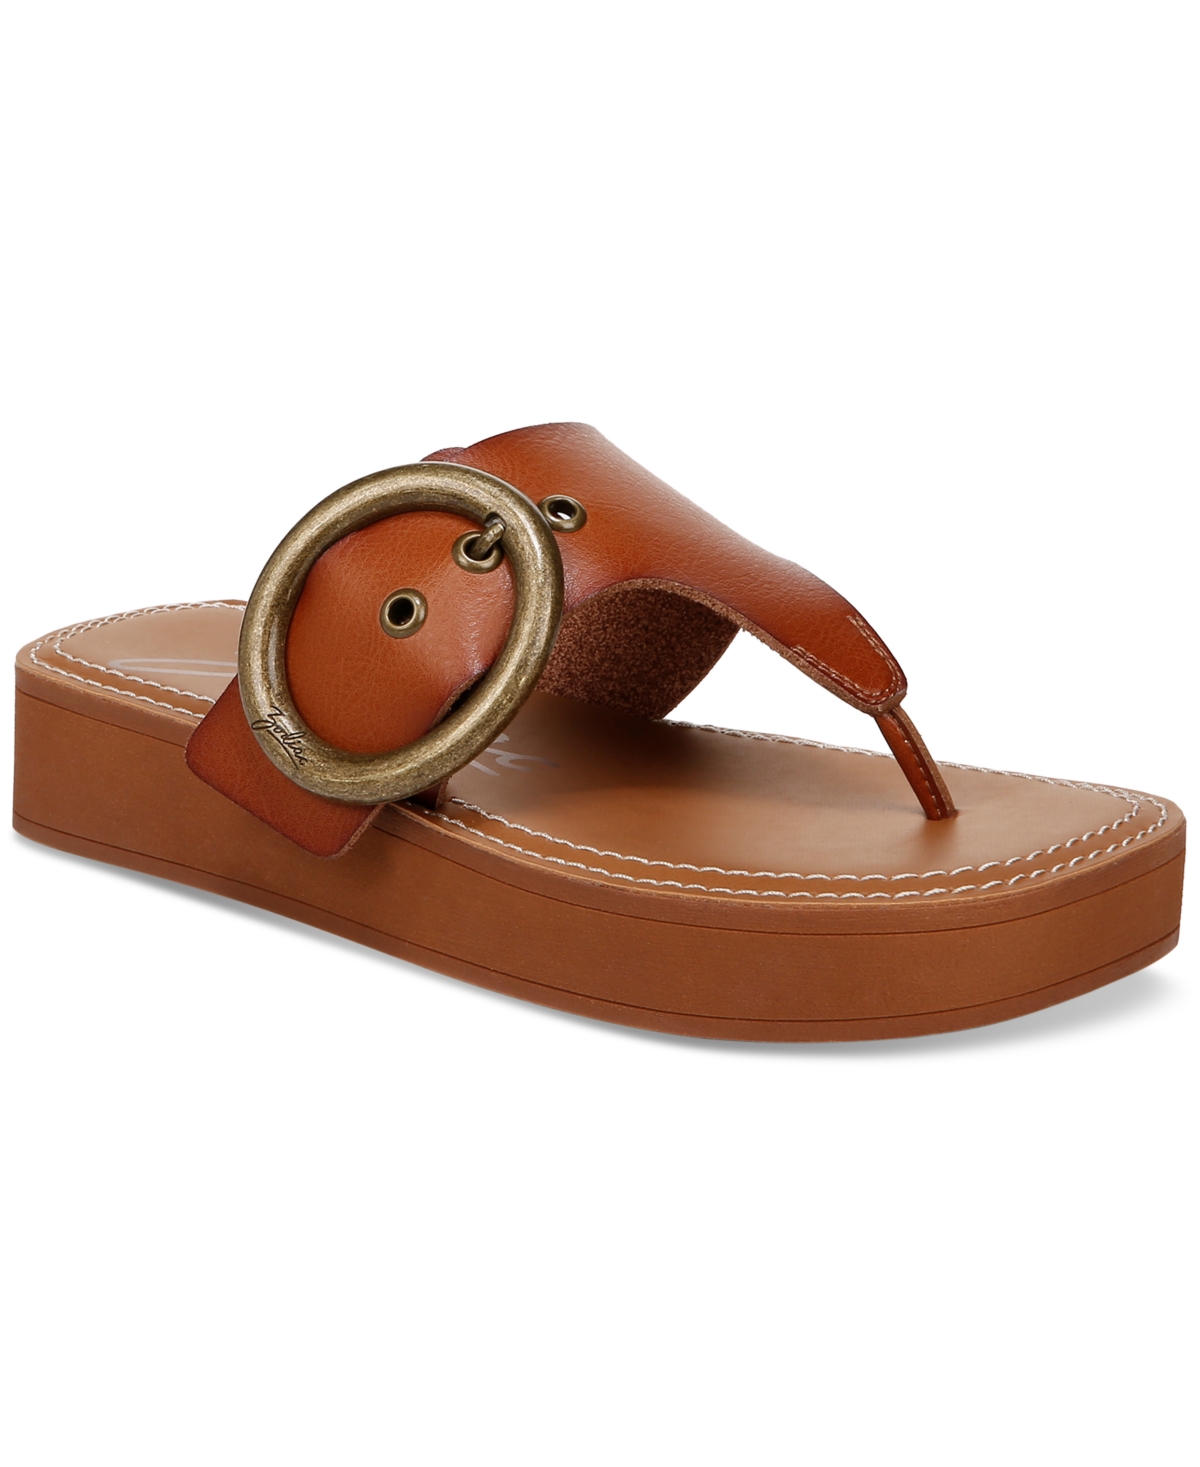 Women's Jadon T-Strap Buckled Slip-On Sandals - Brown